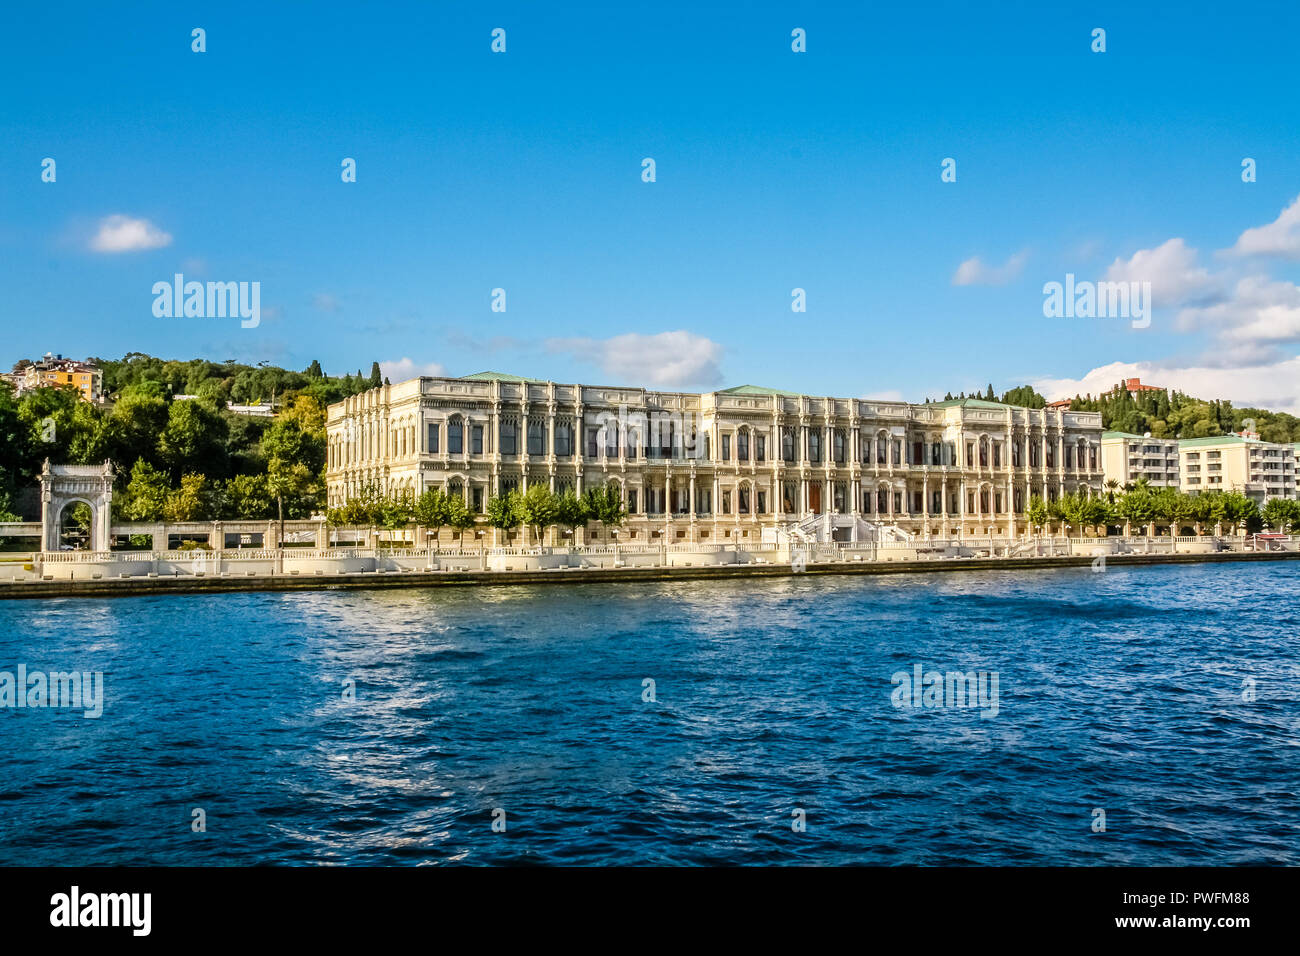 Çırağan Palace Kempinsk est un hôtel Ottoman Imperial Palace et sur le Bosphore, Istanbul. Banque D'Images